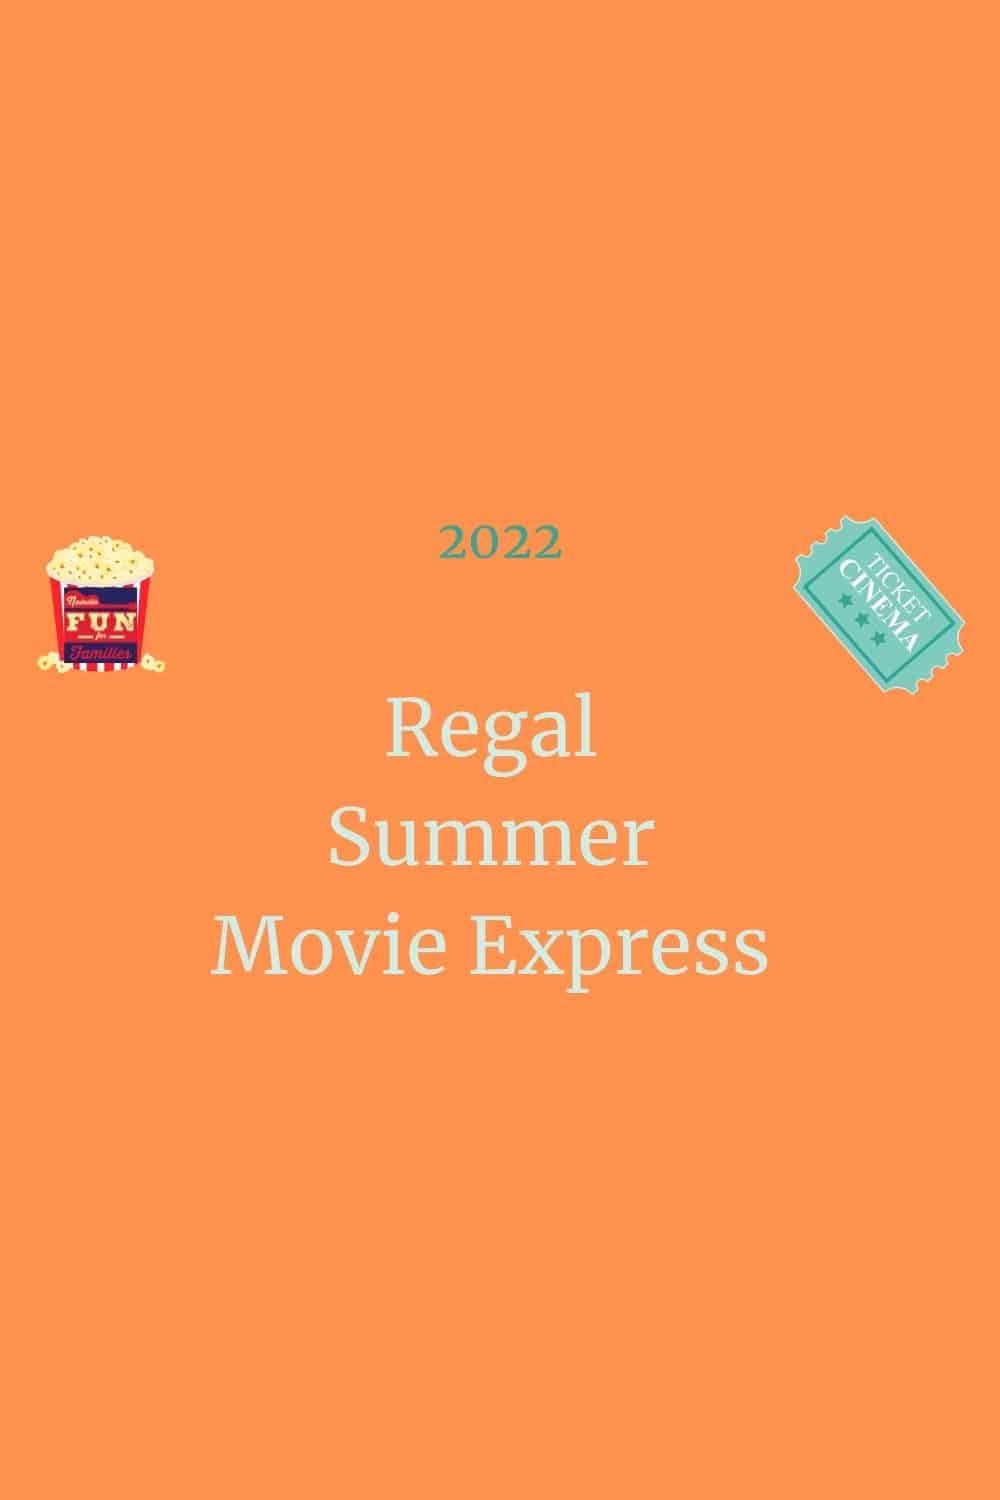 2022 Regal Summer Movie Express Complete Schedule